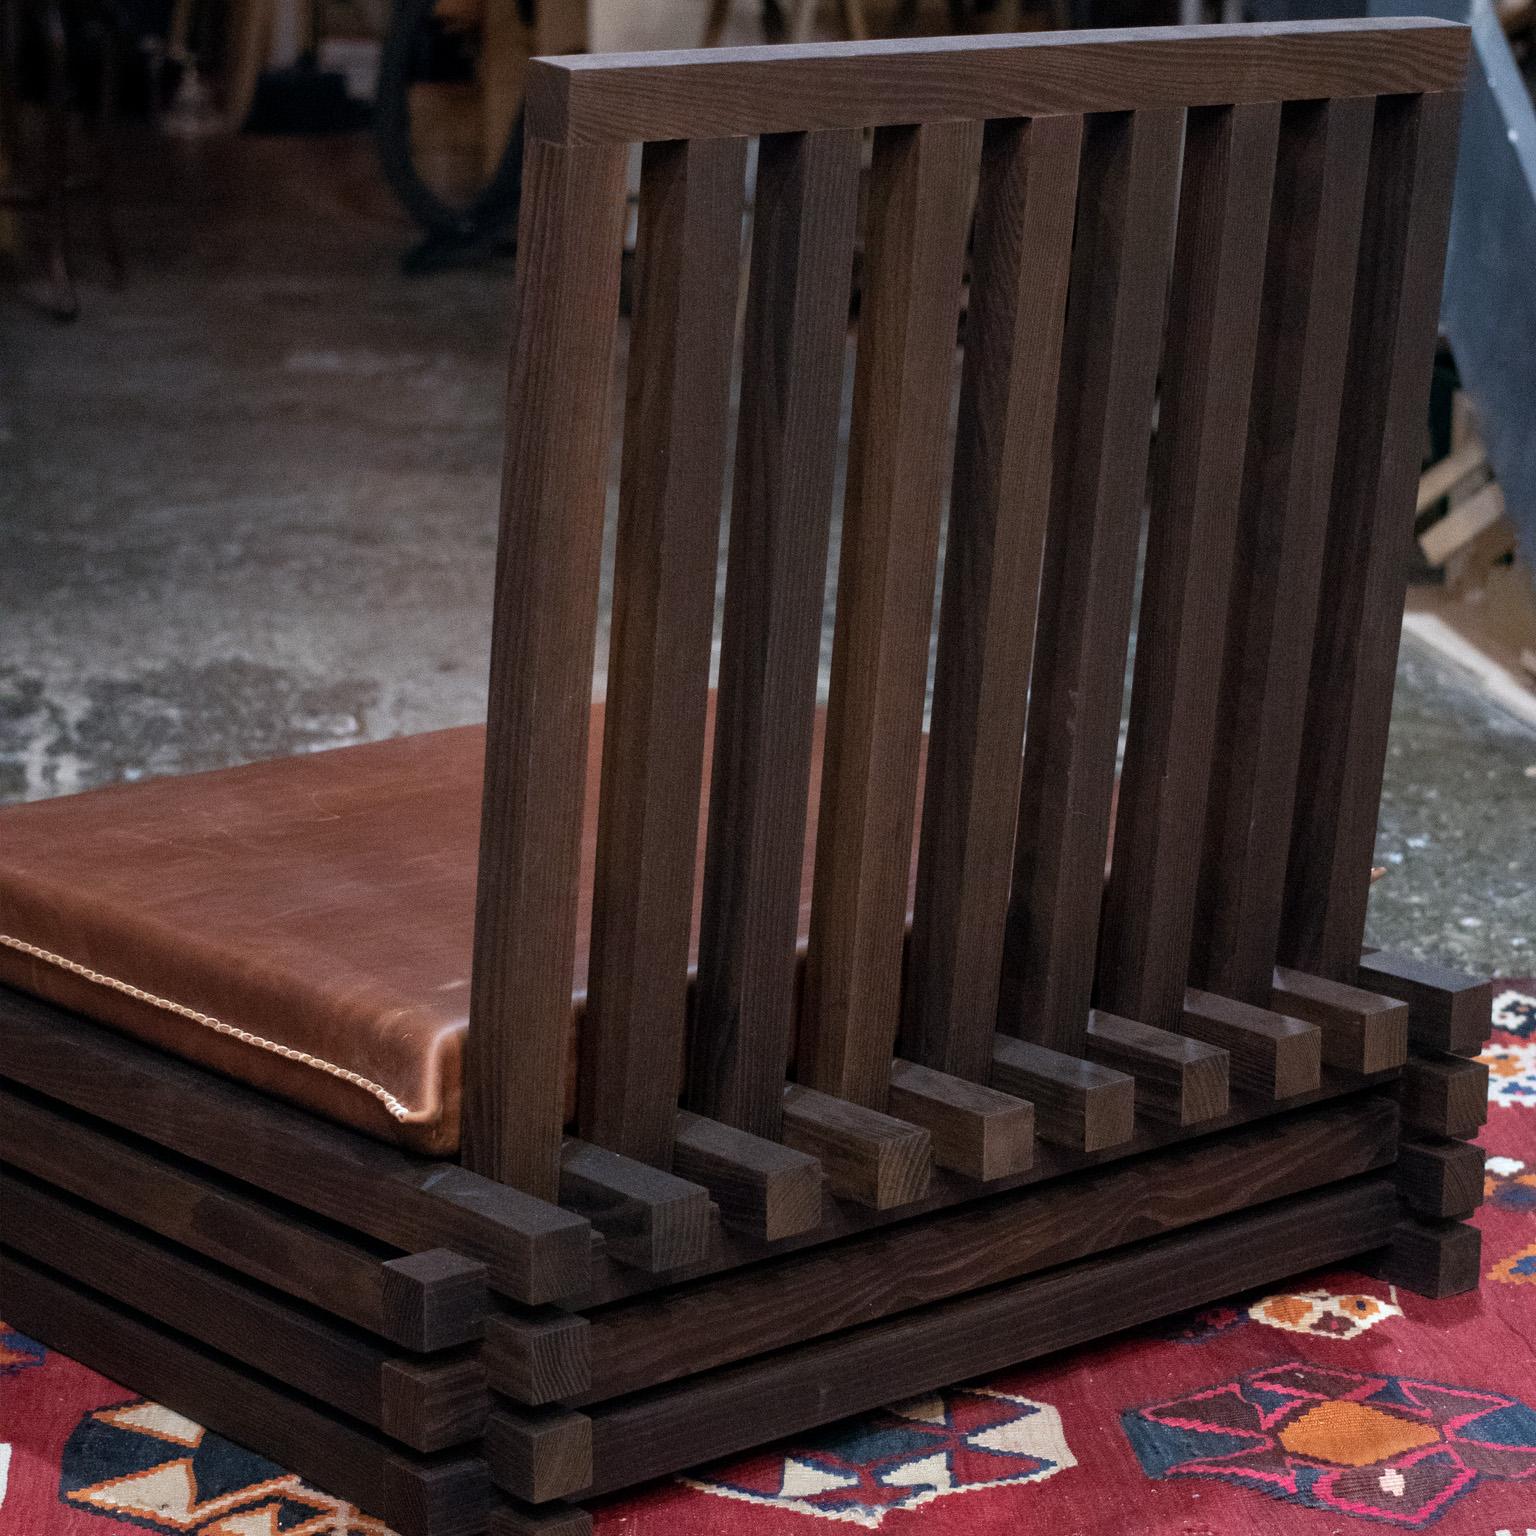 La chaise ekosi est un exemple parfait du pouvoir de la simplicité. Dans ce design, nous avons réduit notre chaise de sol à ses éléments de base afin de créer une pièce à la fois élégante et fonctionnelle.

Notre chaise ekosi présente un cadre en